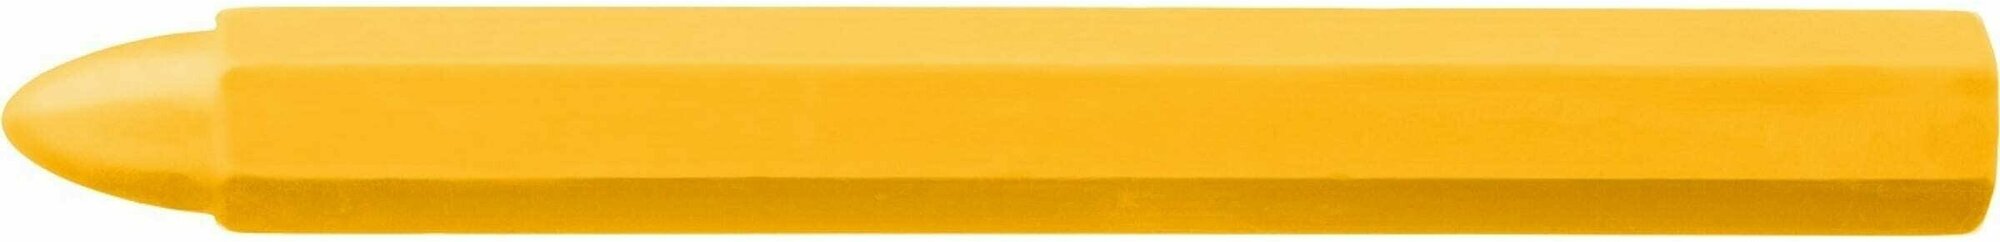 Восковые разметочные мелки Зубр 06330-5, 6 штук, желтые - фото №5